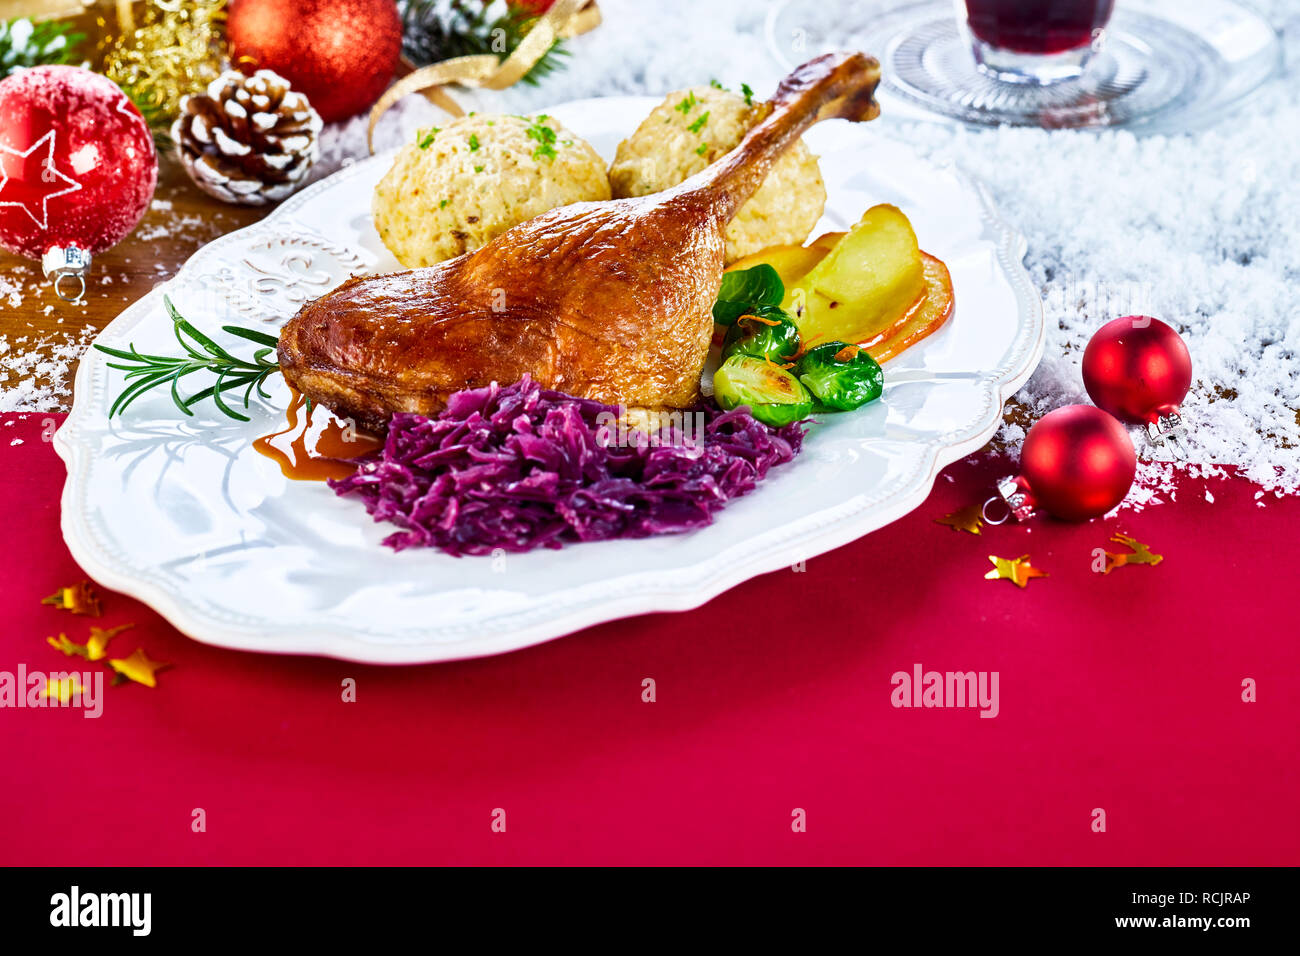 Mit der traditionellen Weihnachten gebratener Truthahn auf einer festlichen roten Tisch in einem Restaurant mit frischem Gemüse und Knödel durch Schnee und Deco umgeben Stockfoto